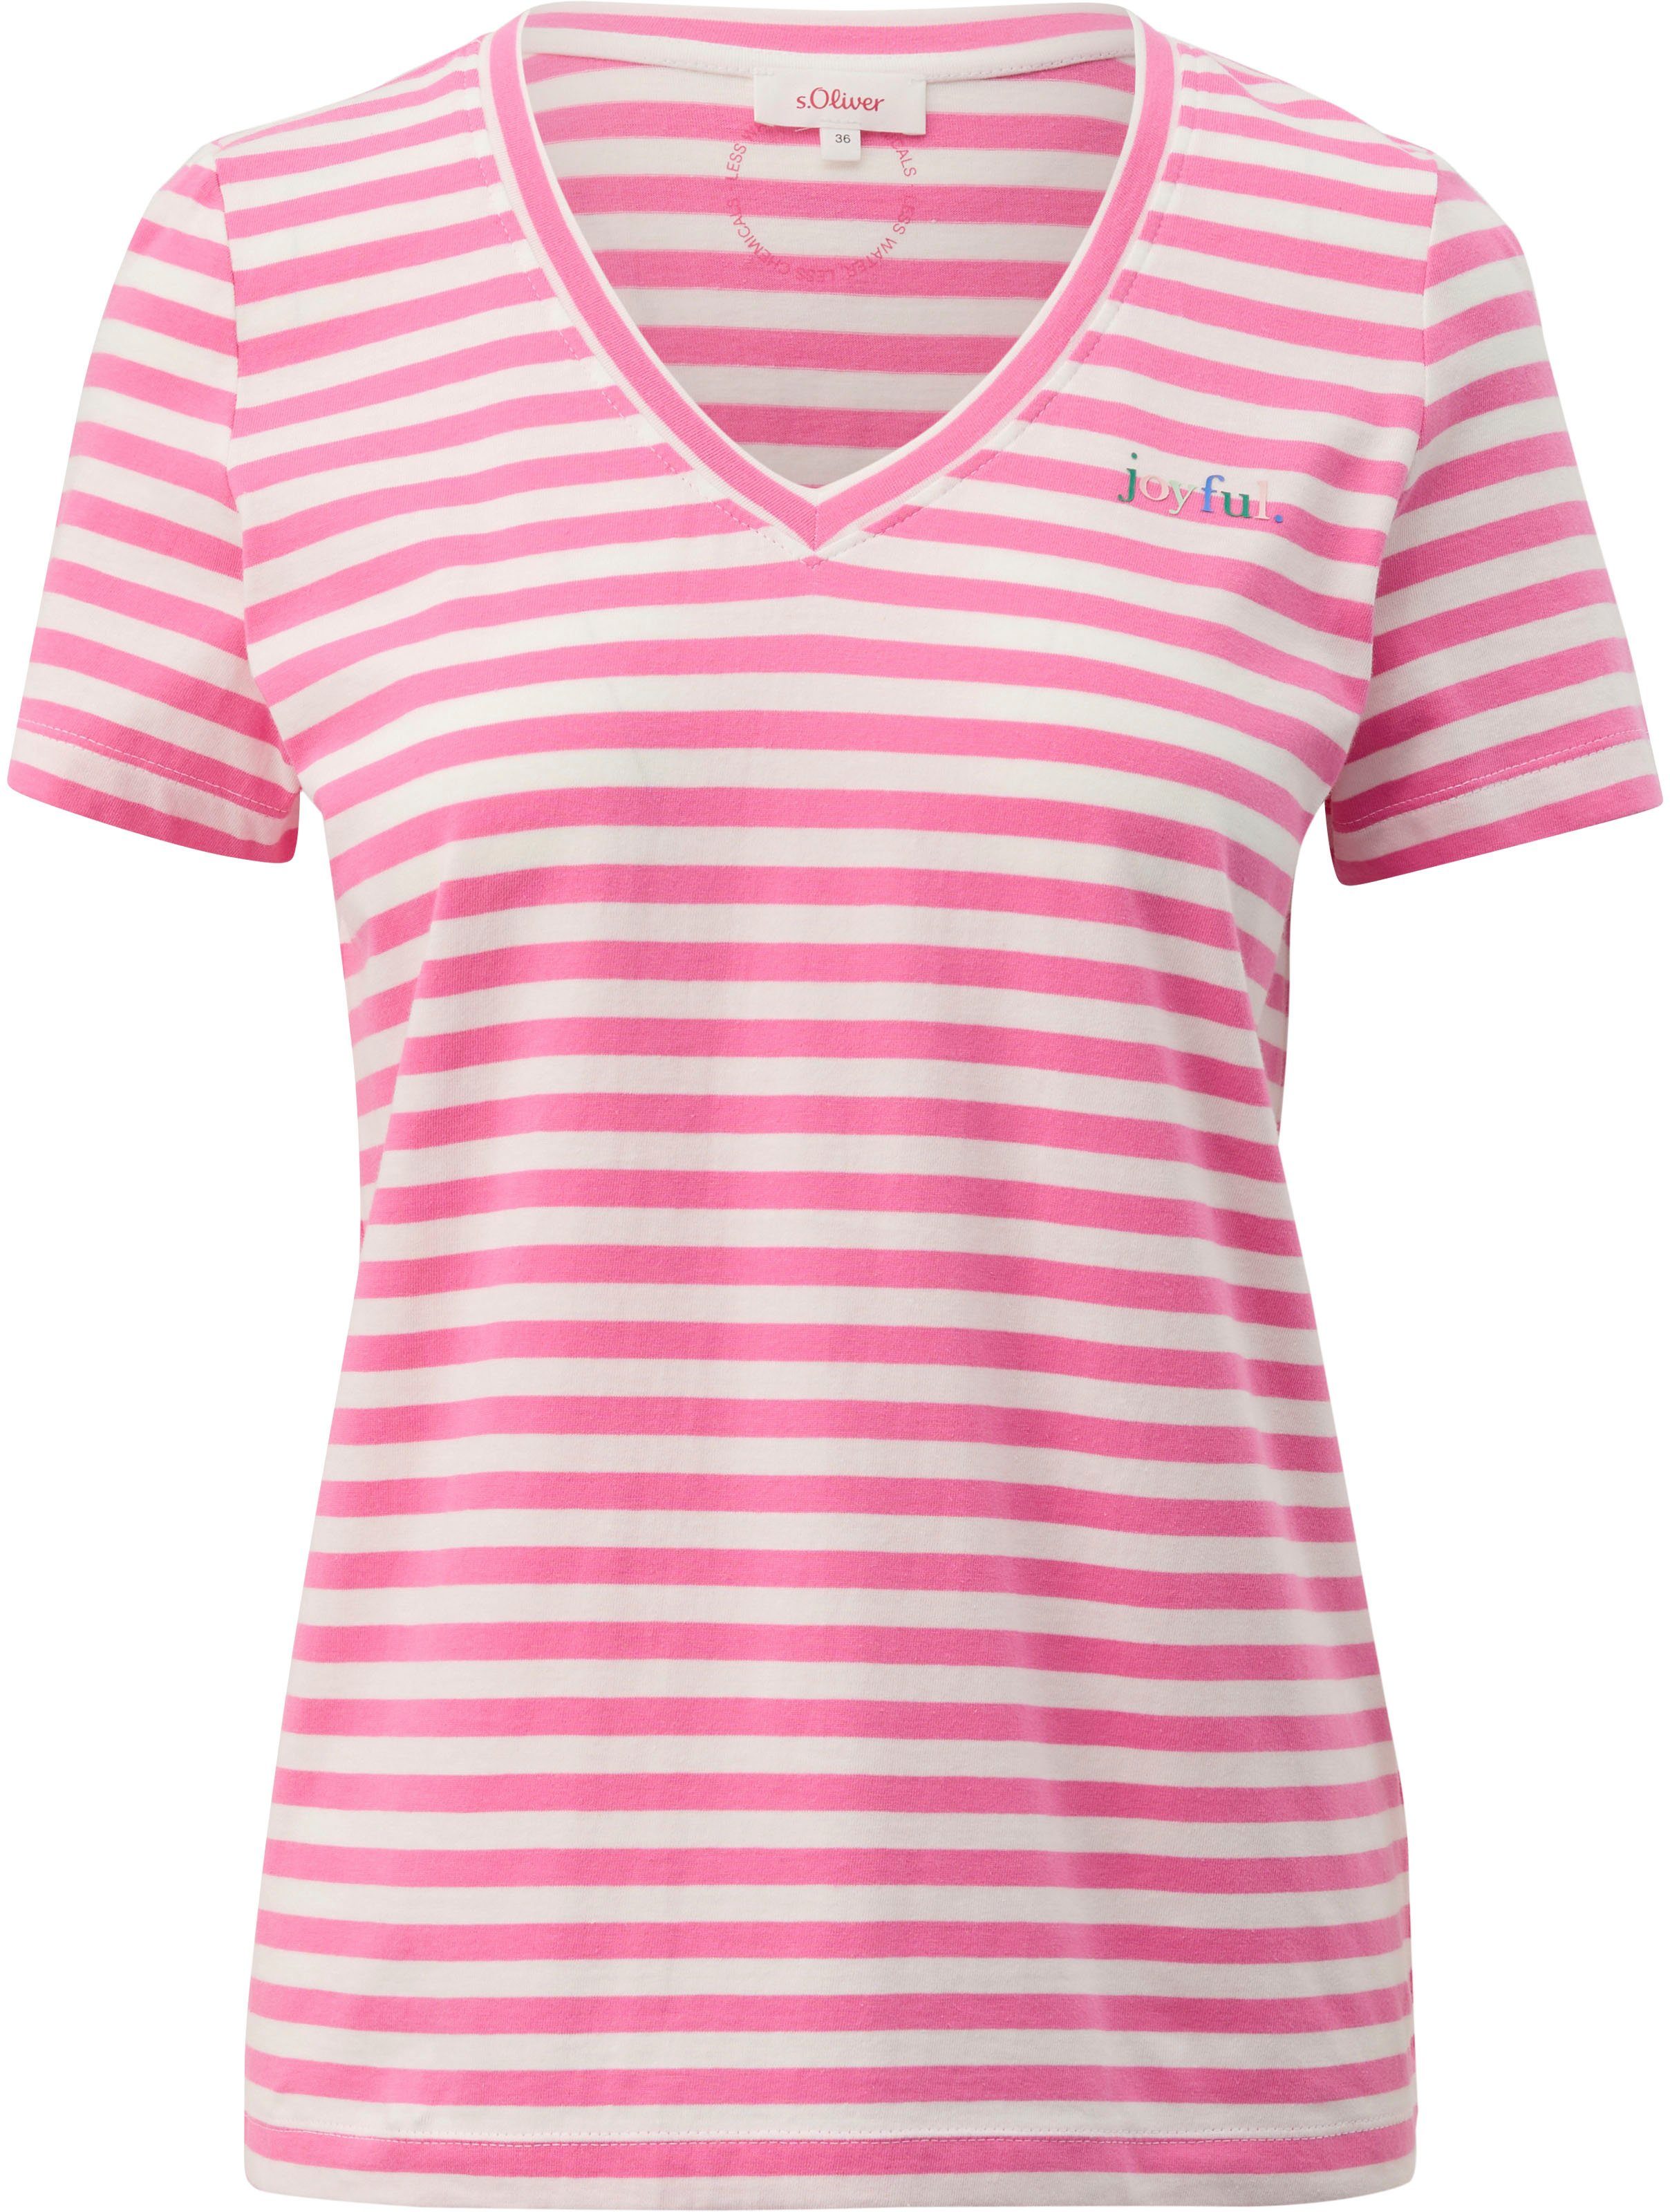 s.Oliver V-Shirt mit Frontprint lilac/pink »joyful.«